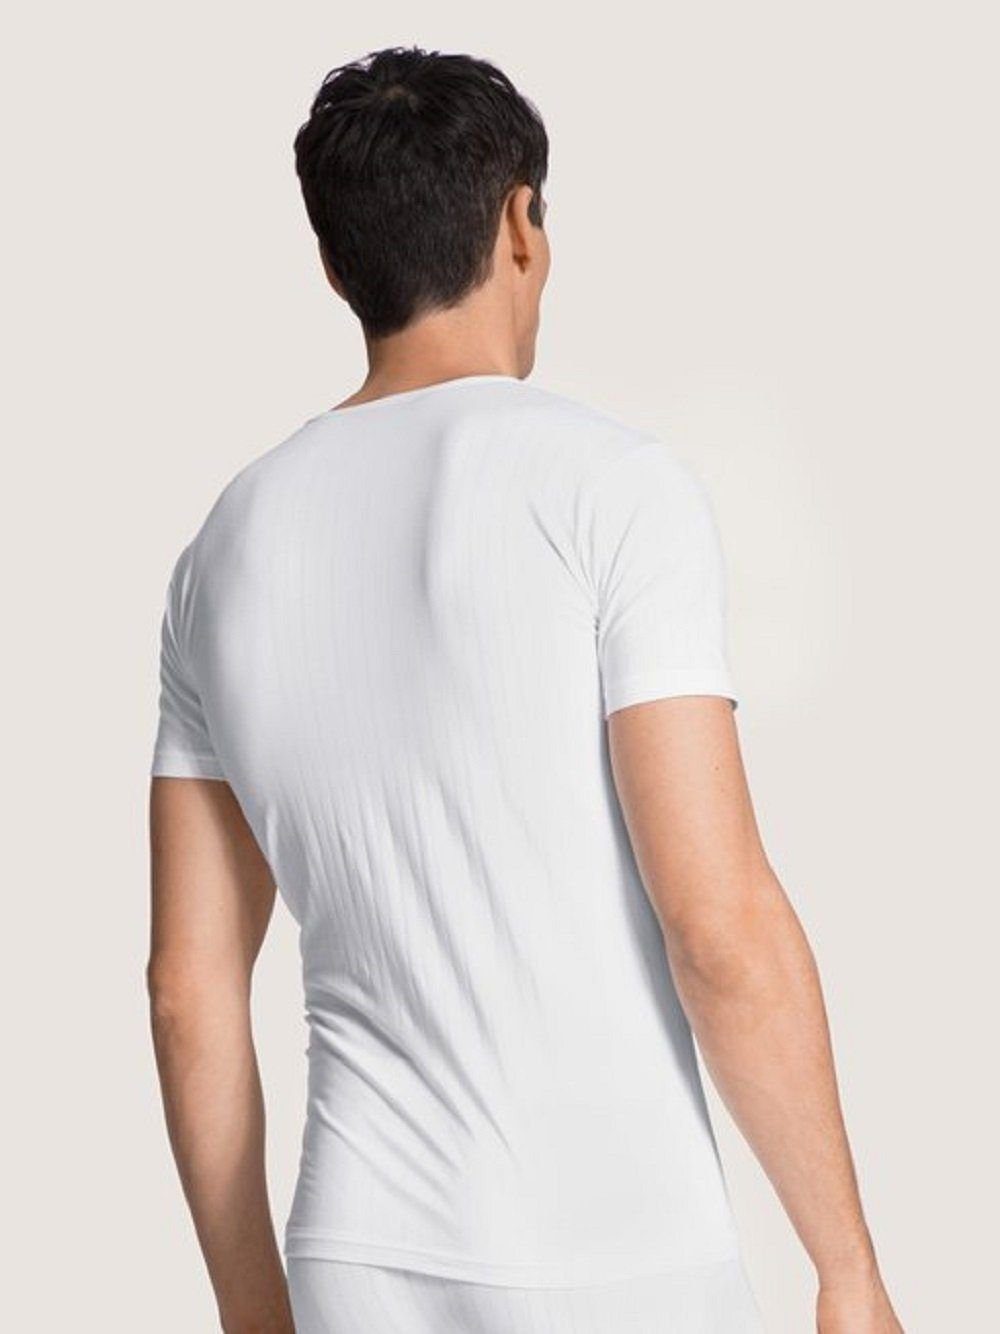 Stückl, Daily Style Stück) CALIDA Unterziehshirt 14886 Calida Func.Pure T-Shirt Weiß 1 trocknend schnell & (1